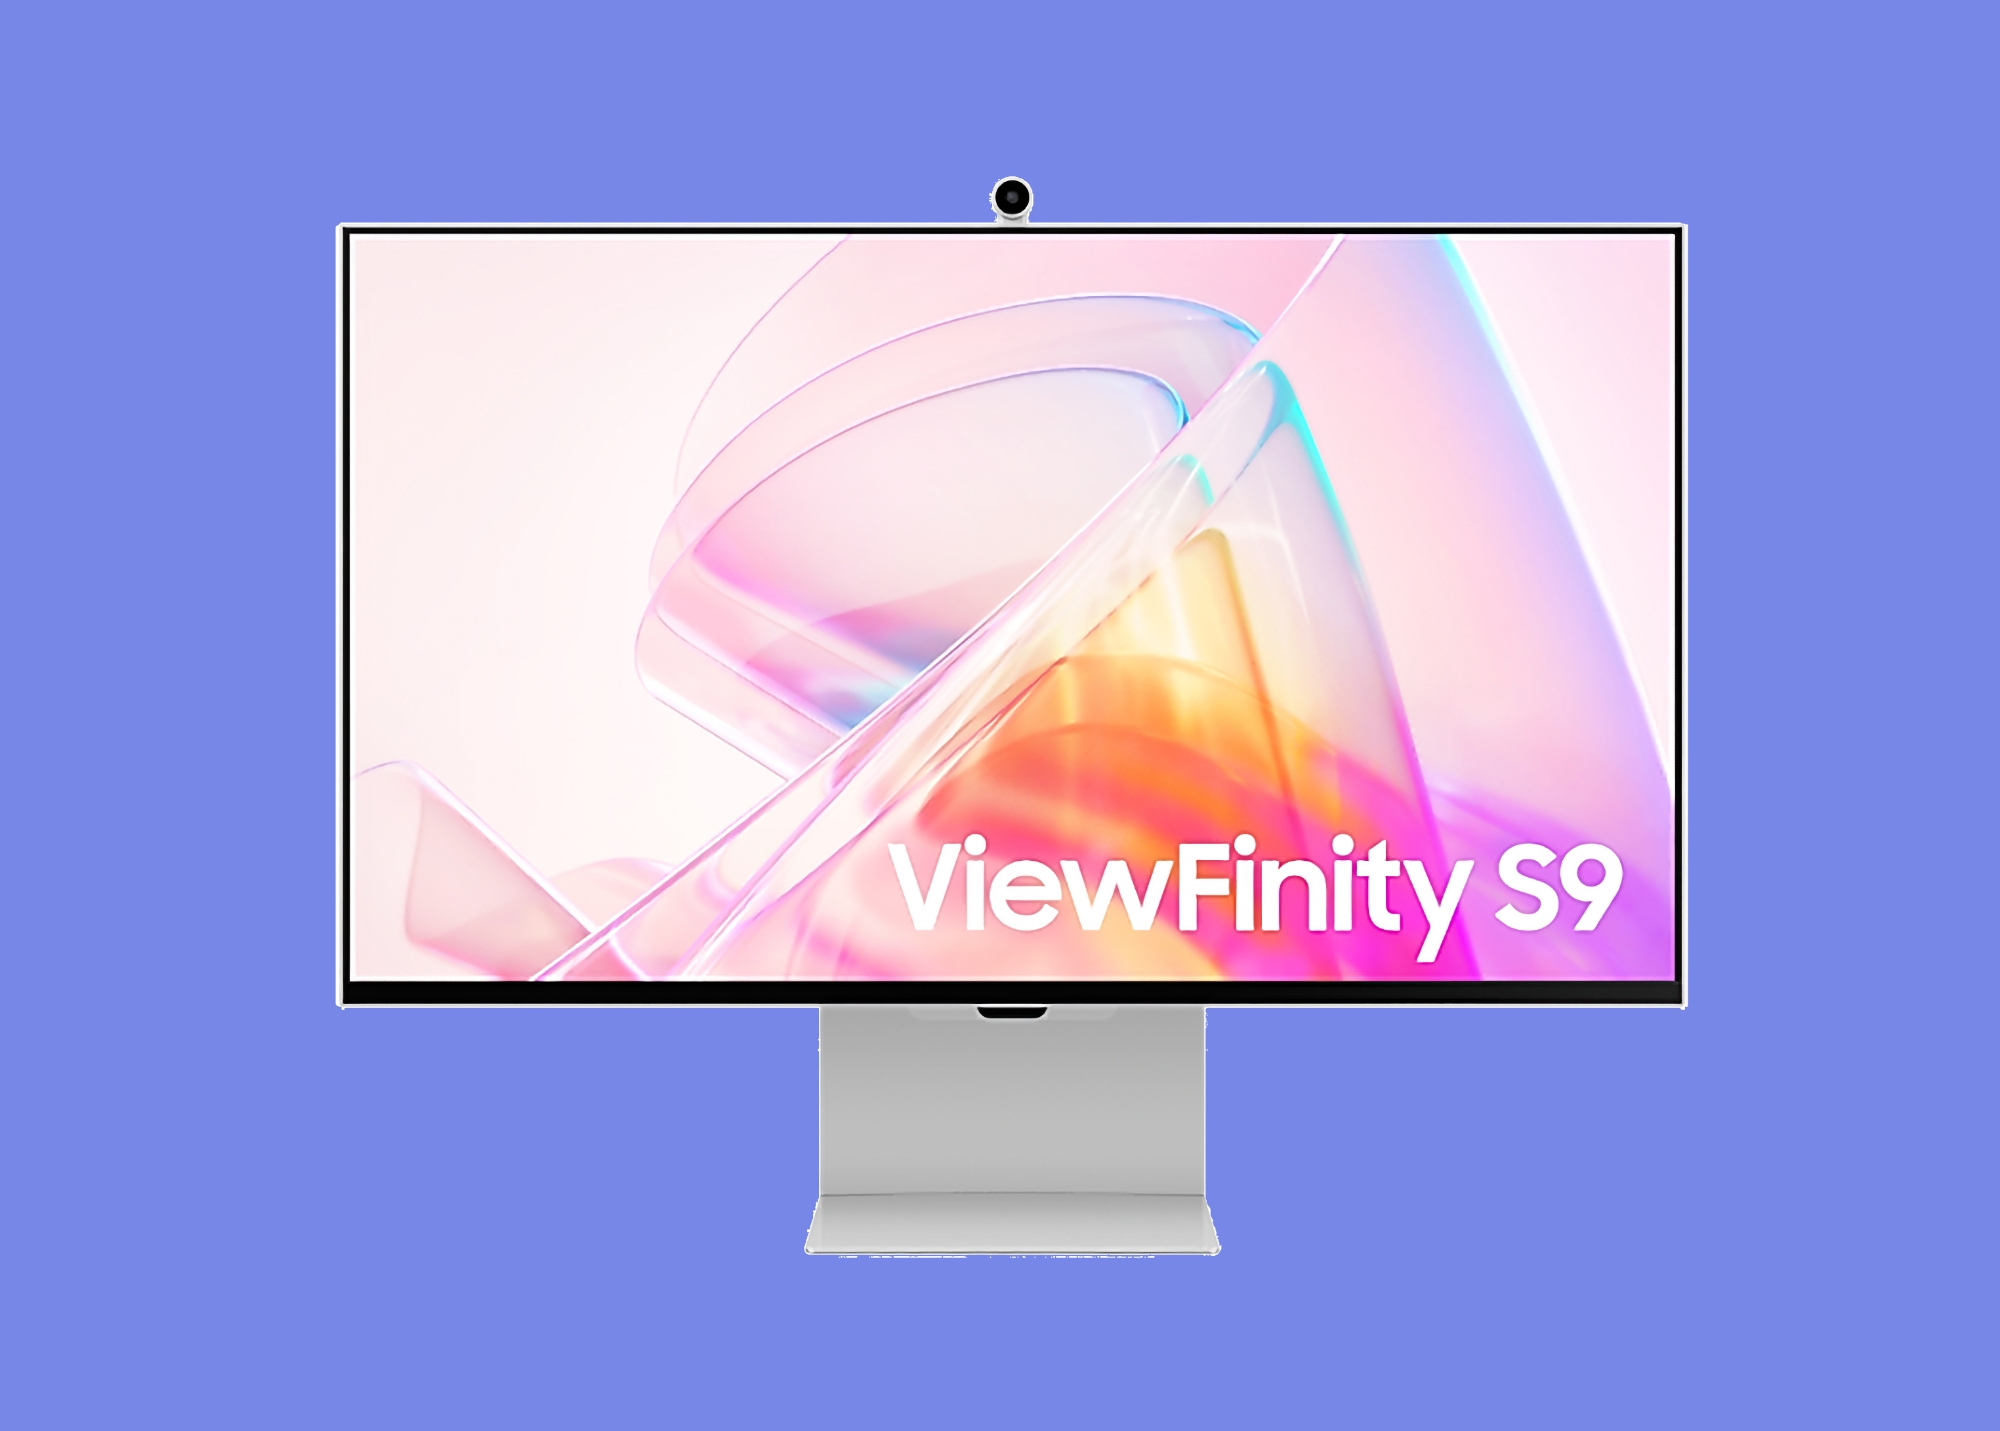 El descuento es de 704 dólares: Samsung ViewFinity S9 con pantalla mate, webcam y Tizen TV OS está disponible en Amazon a precio promocional 